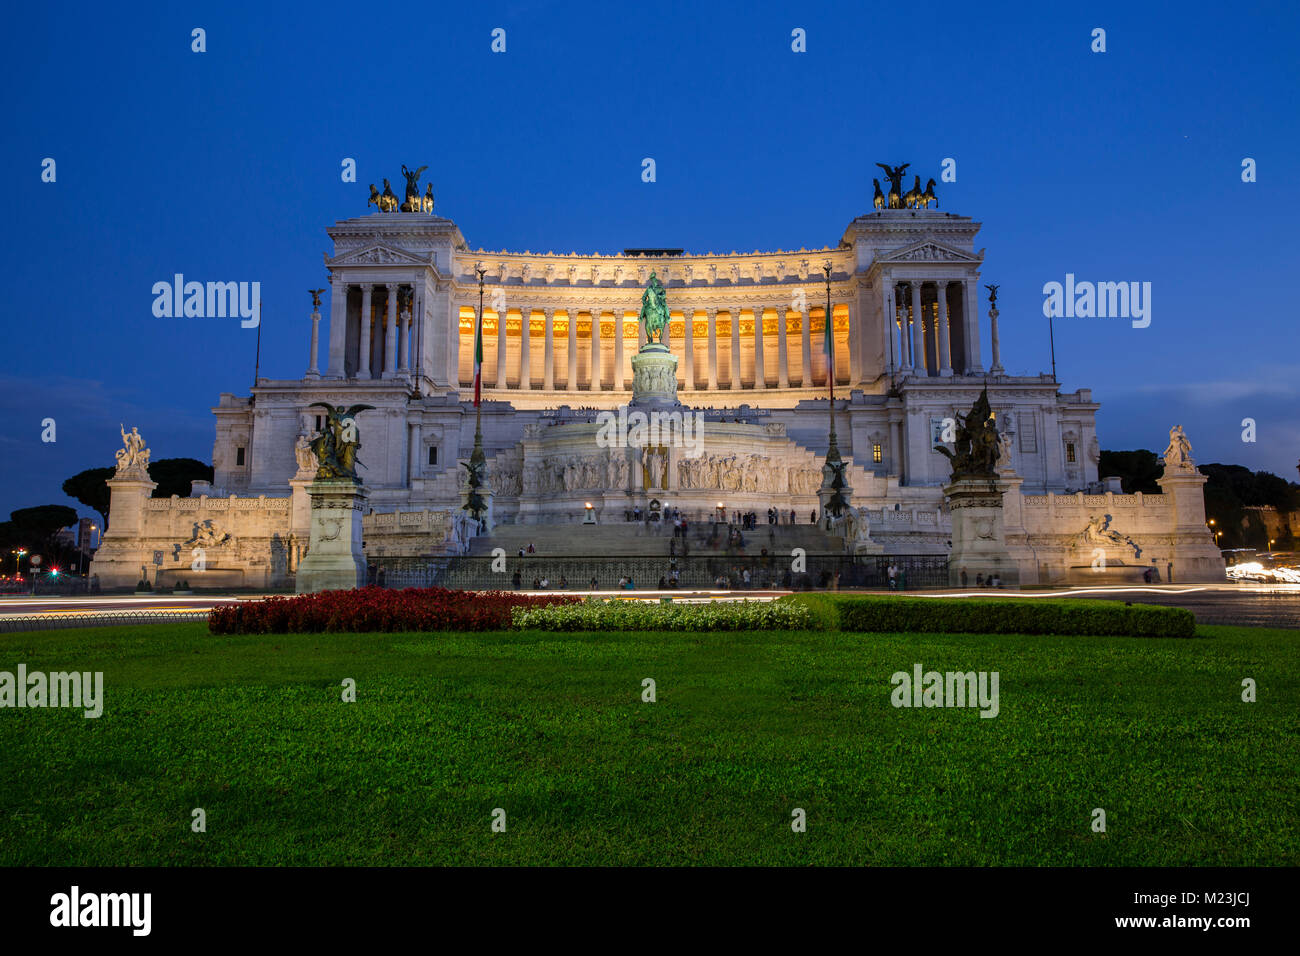 Altare della Patria, Monumento Nazionale a Vittorio Emanuele at dusk, Rome, Italy Stock Photo